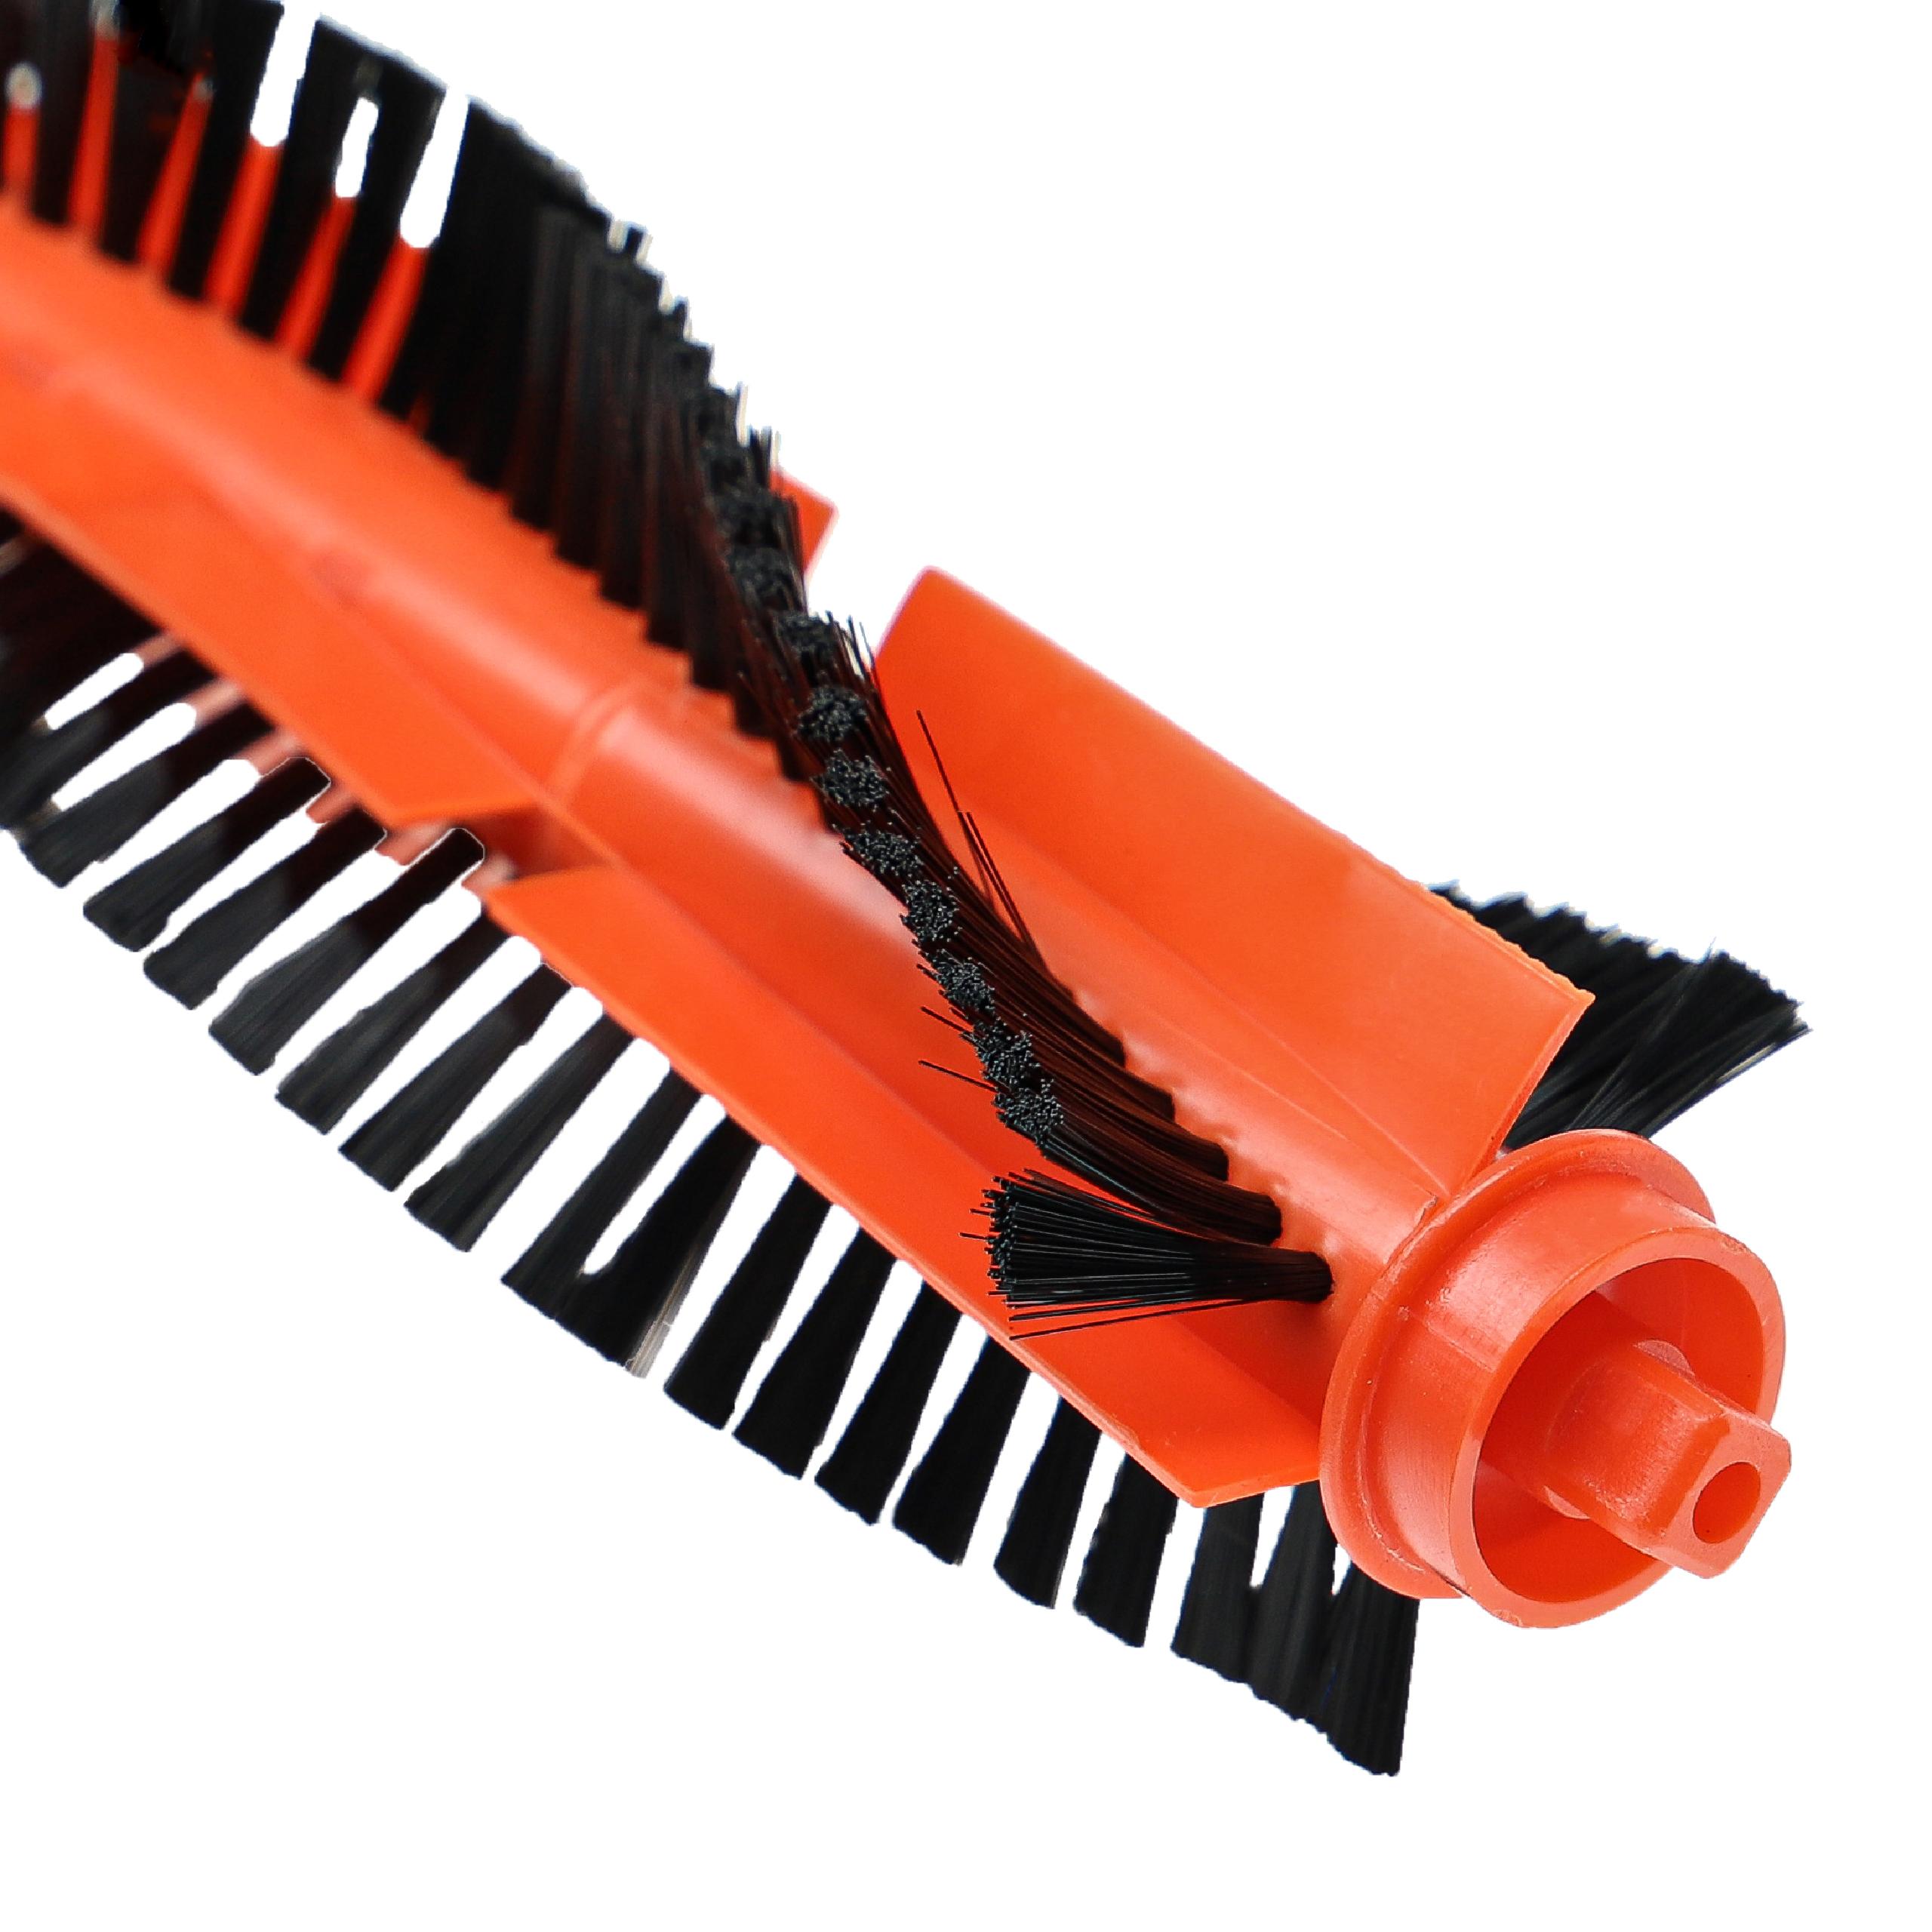  Round Brush suitable for M7 Proscenic, Cecotec, Xiaomi M7 Robot Vacuum Cleaner etc. - Main Brush